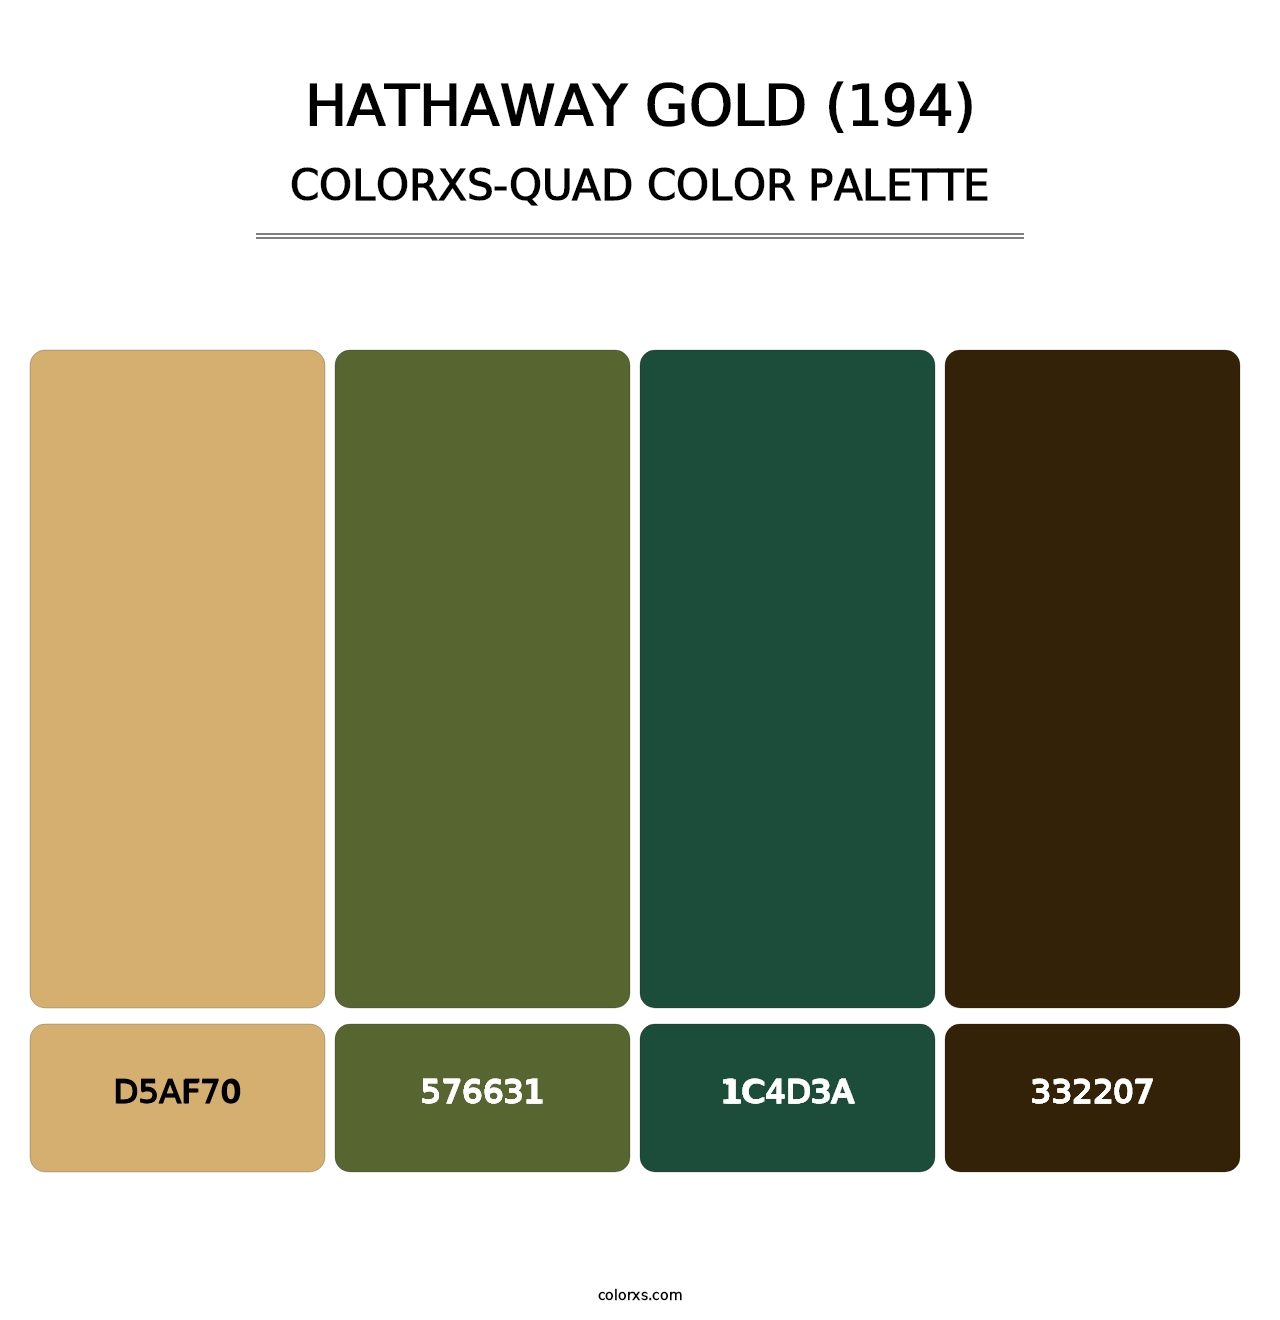 Hathaway Gold (194) - Colorxs Quad Palette